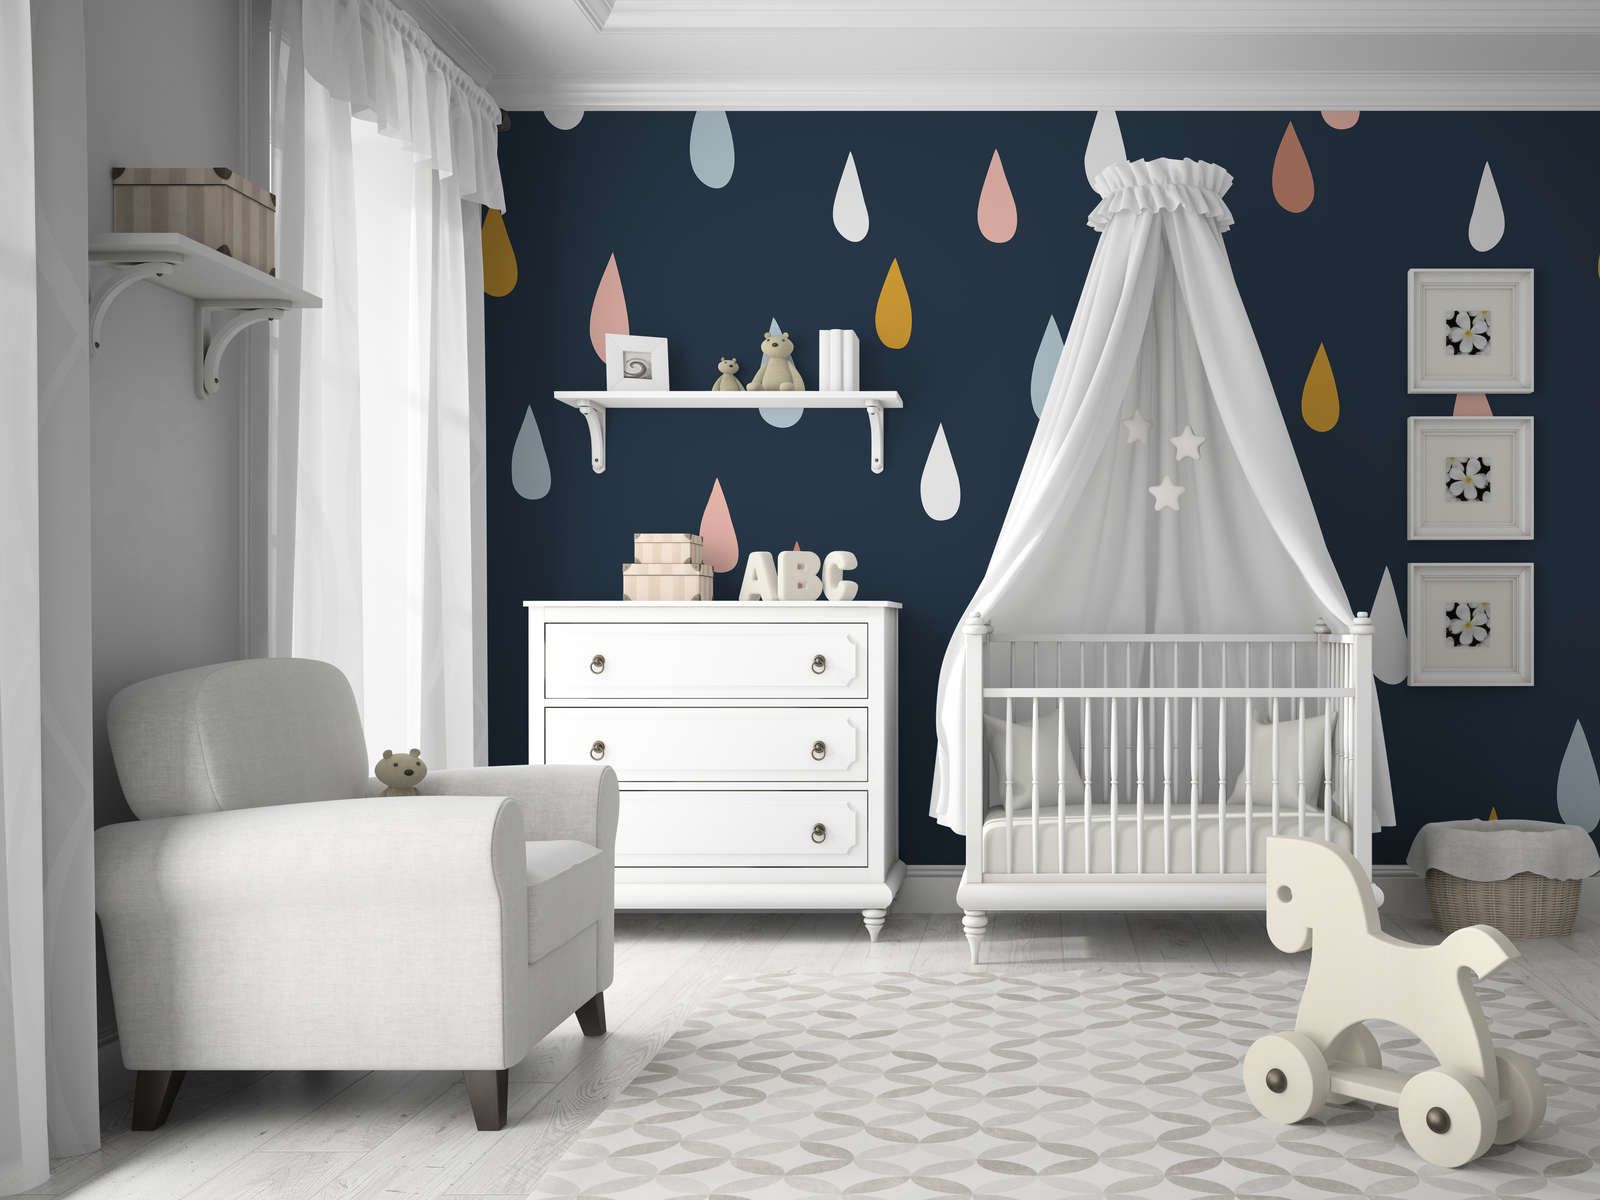             Fototapete fürs Kinderzimmer mit bunten Tropfen – Glattes & leicht glänzendes Vlies
        